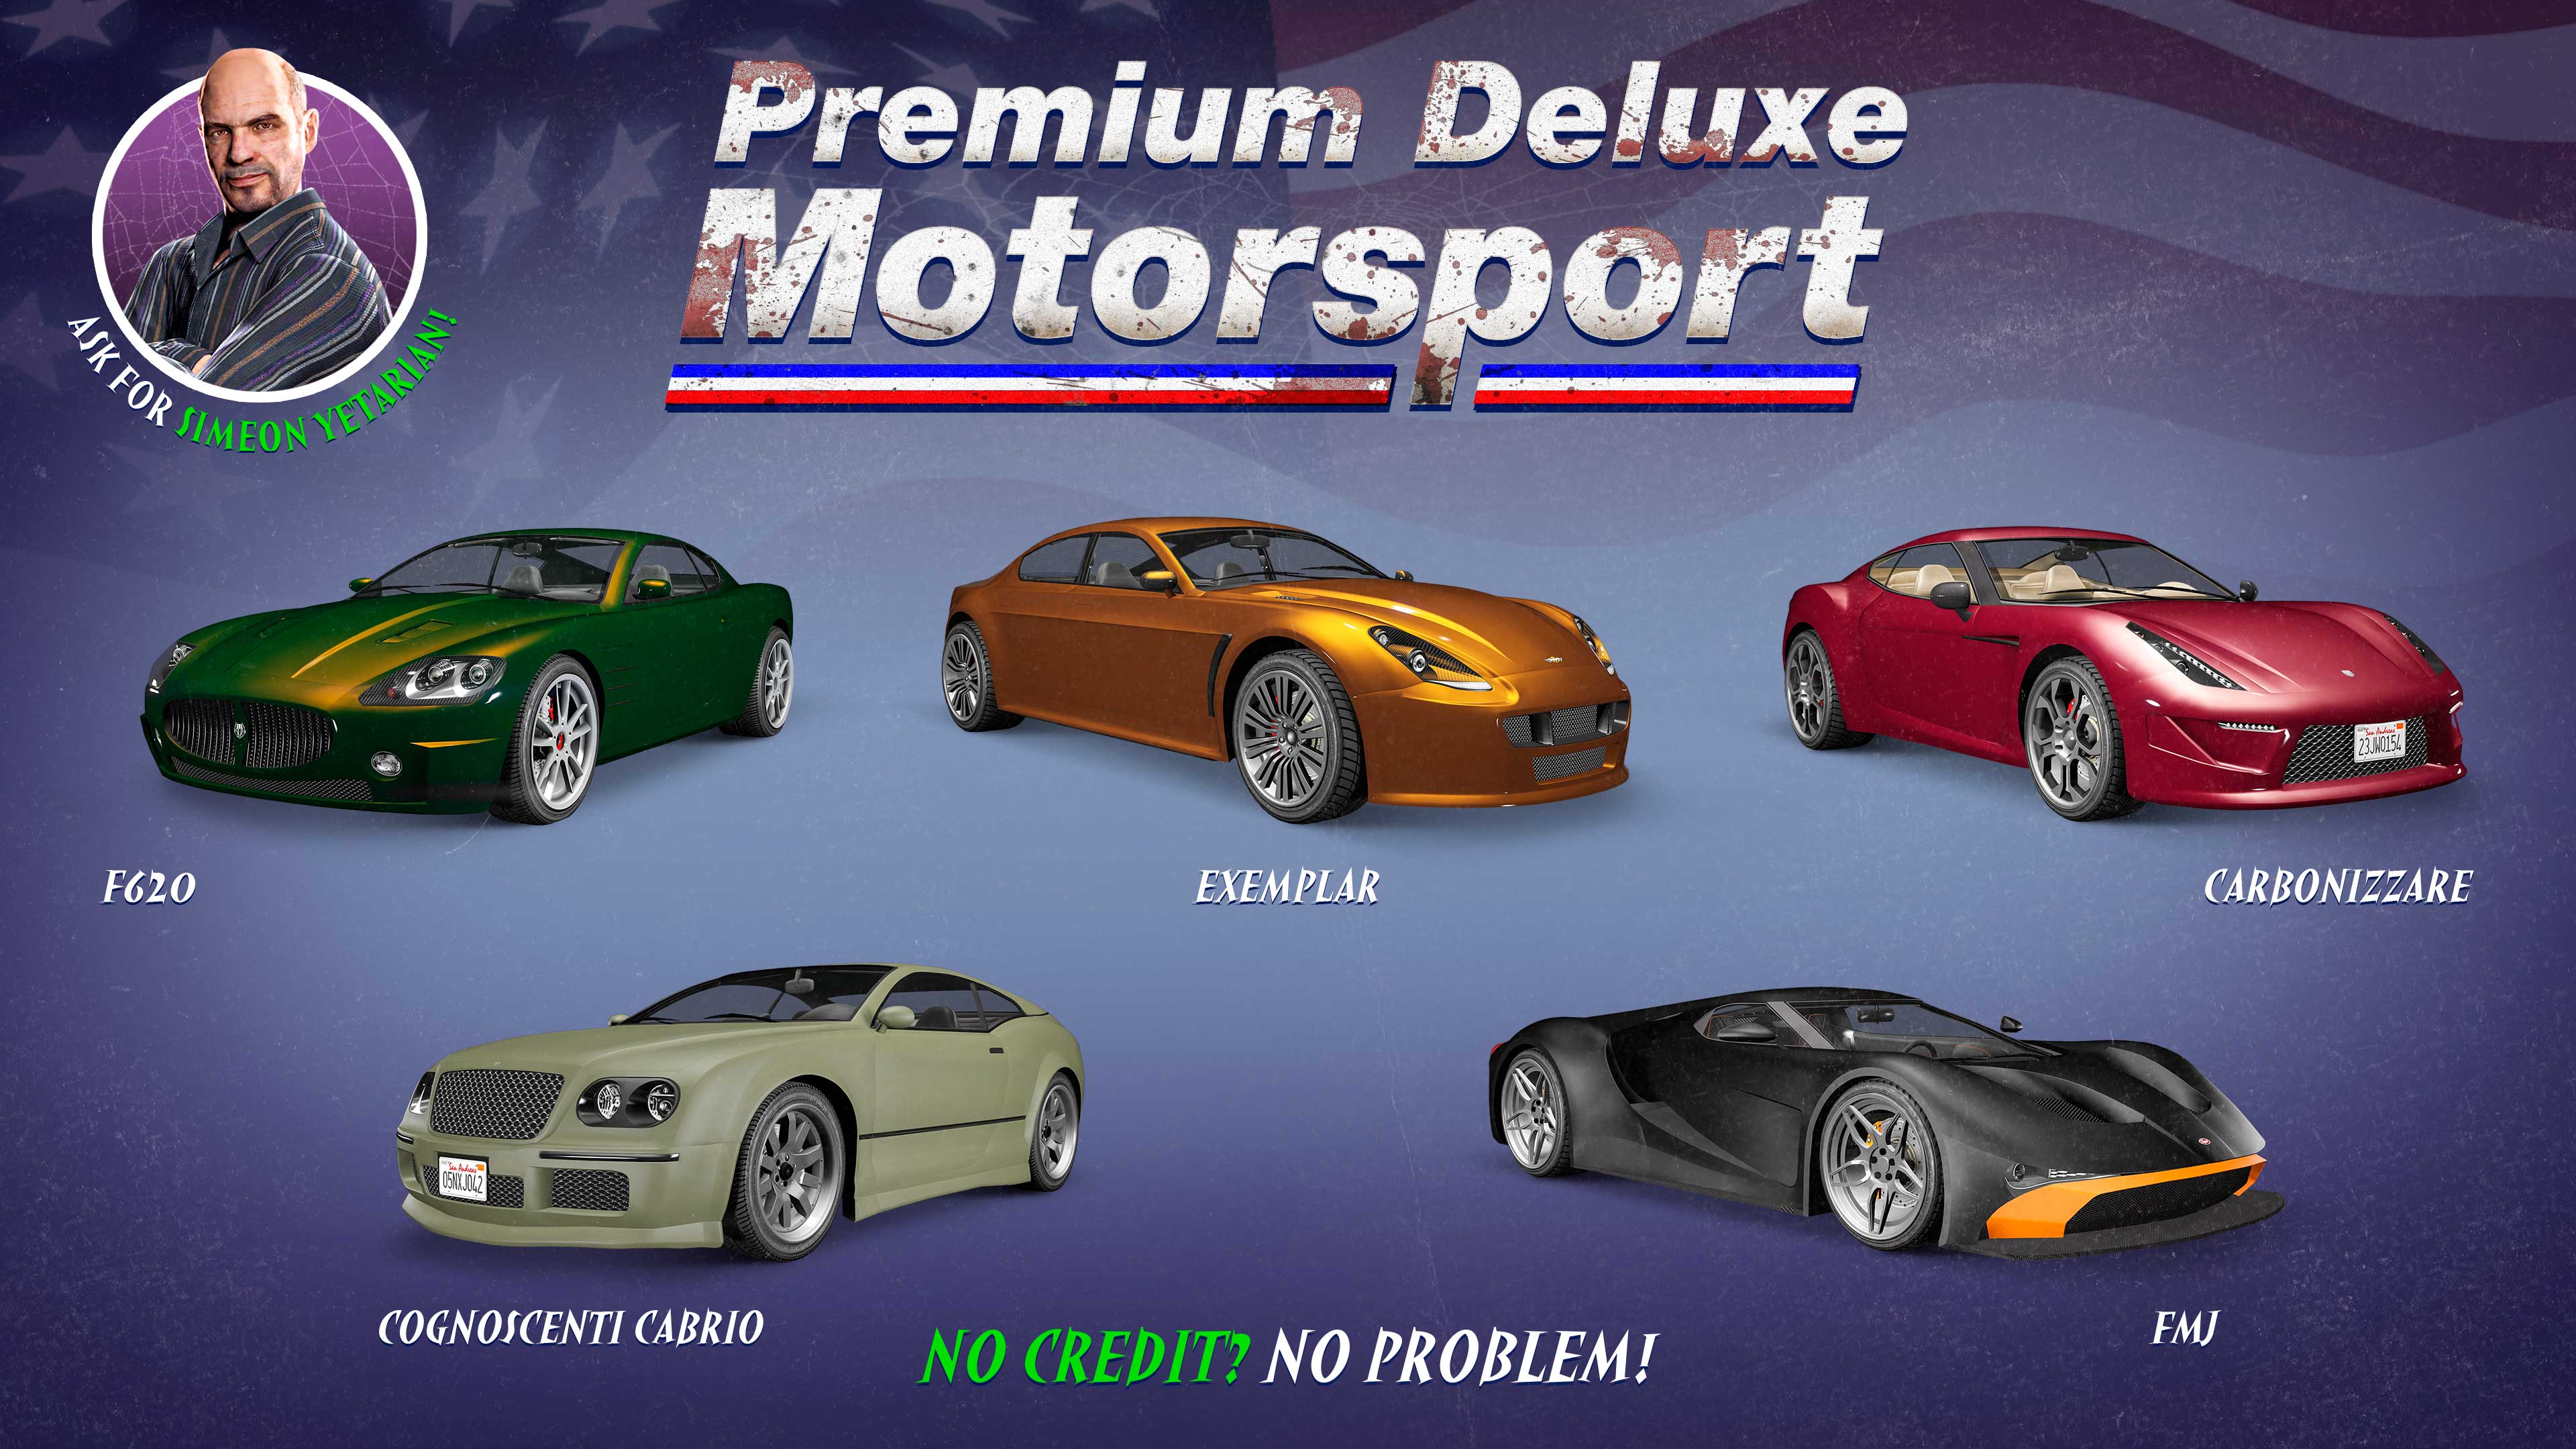 Pôster da Premium Deluxe Motorsport